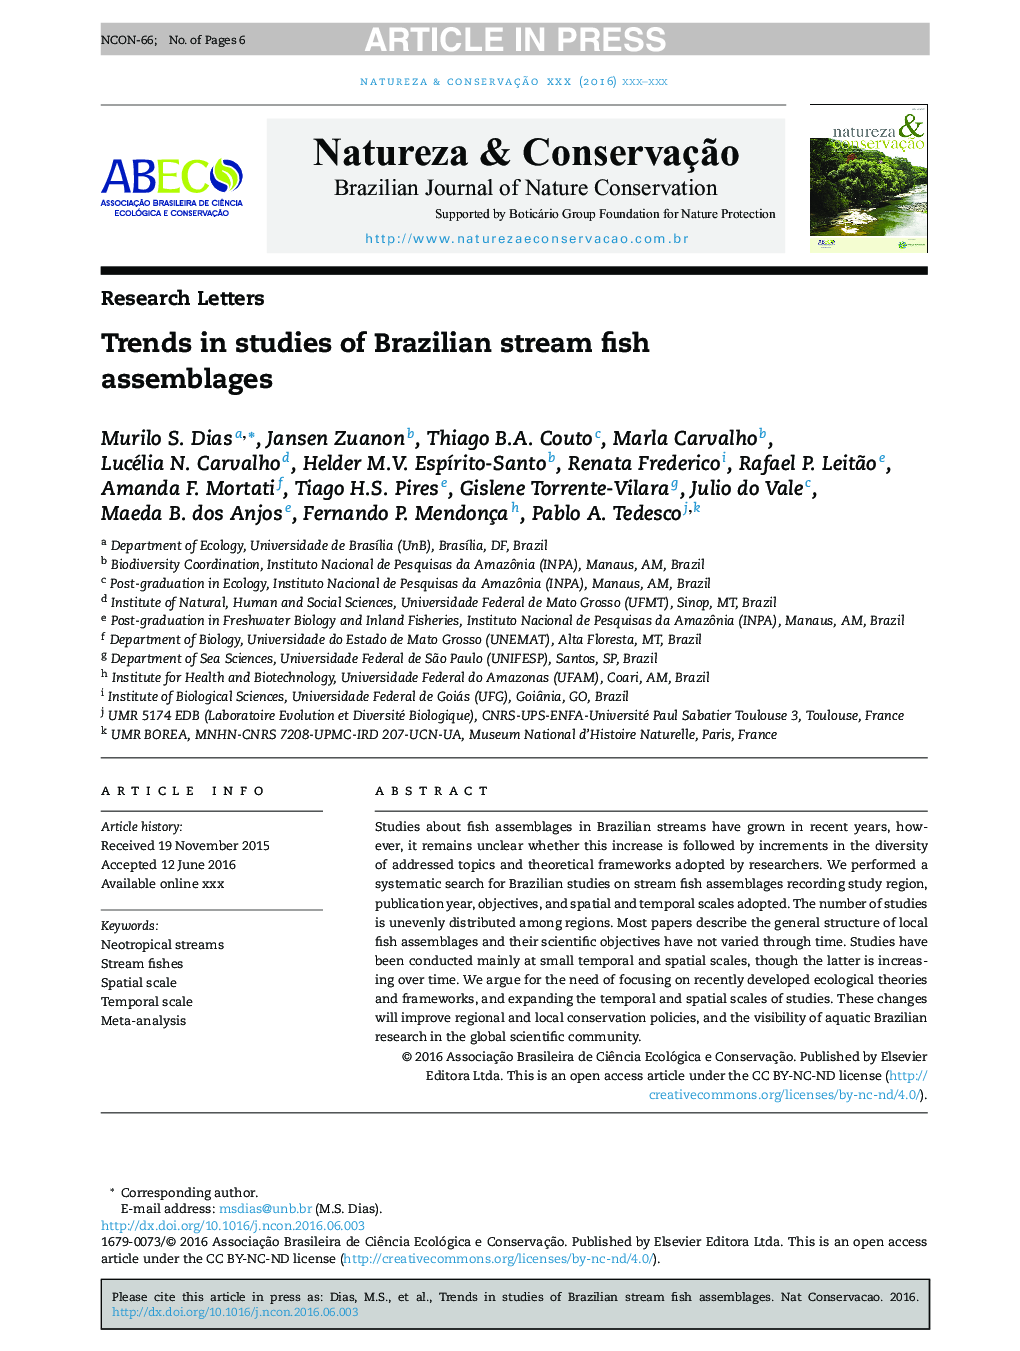 روند مطالعات موجود در ماهی های دریایی برزیل 